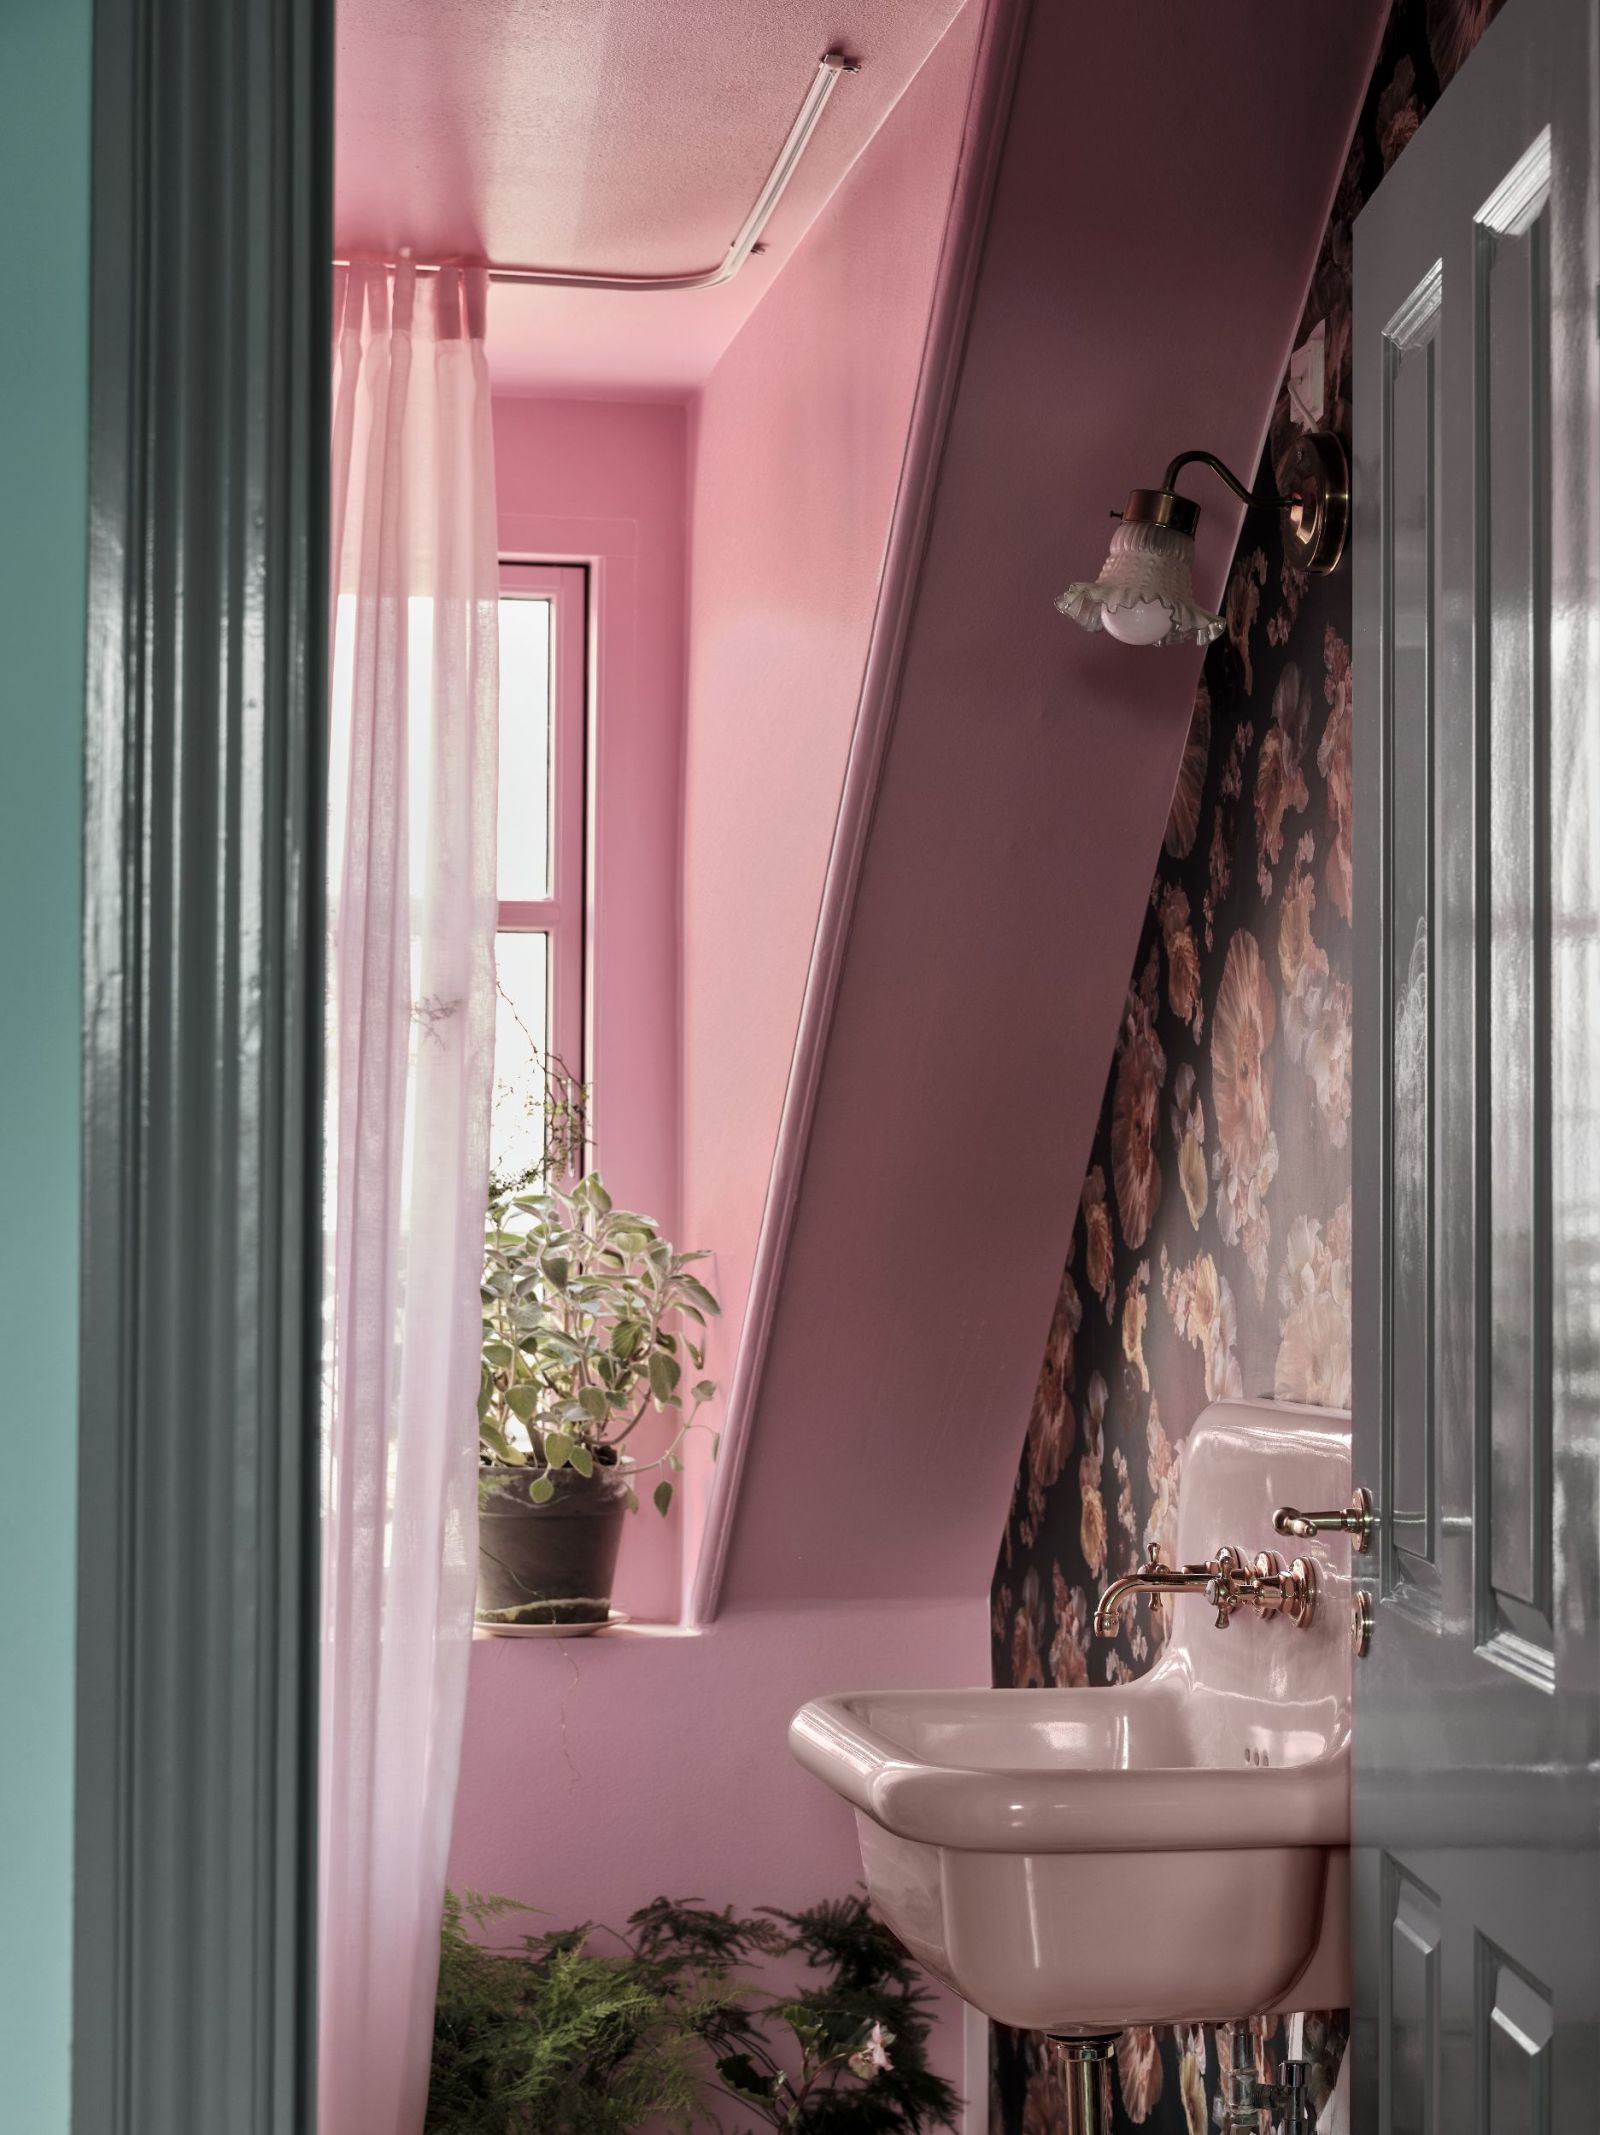 Thay vì sắc trắng quen thuộc, phòng tắm này lựa chọn sơn màu hồng cùng giấy dán tường hoa văn nữ tính, kết hợp vài chậu cảnh tươi xanh cho người yêu vẻ ngọt ngào.